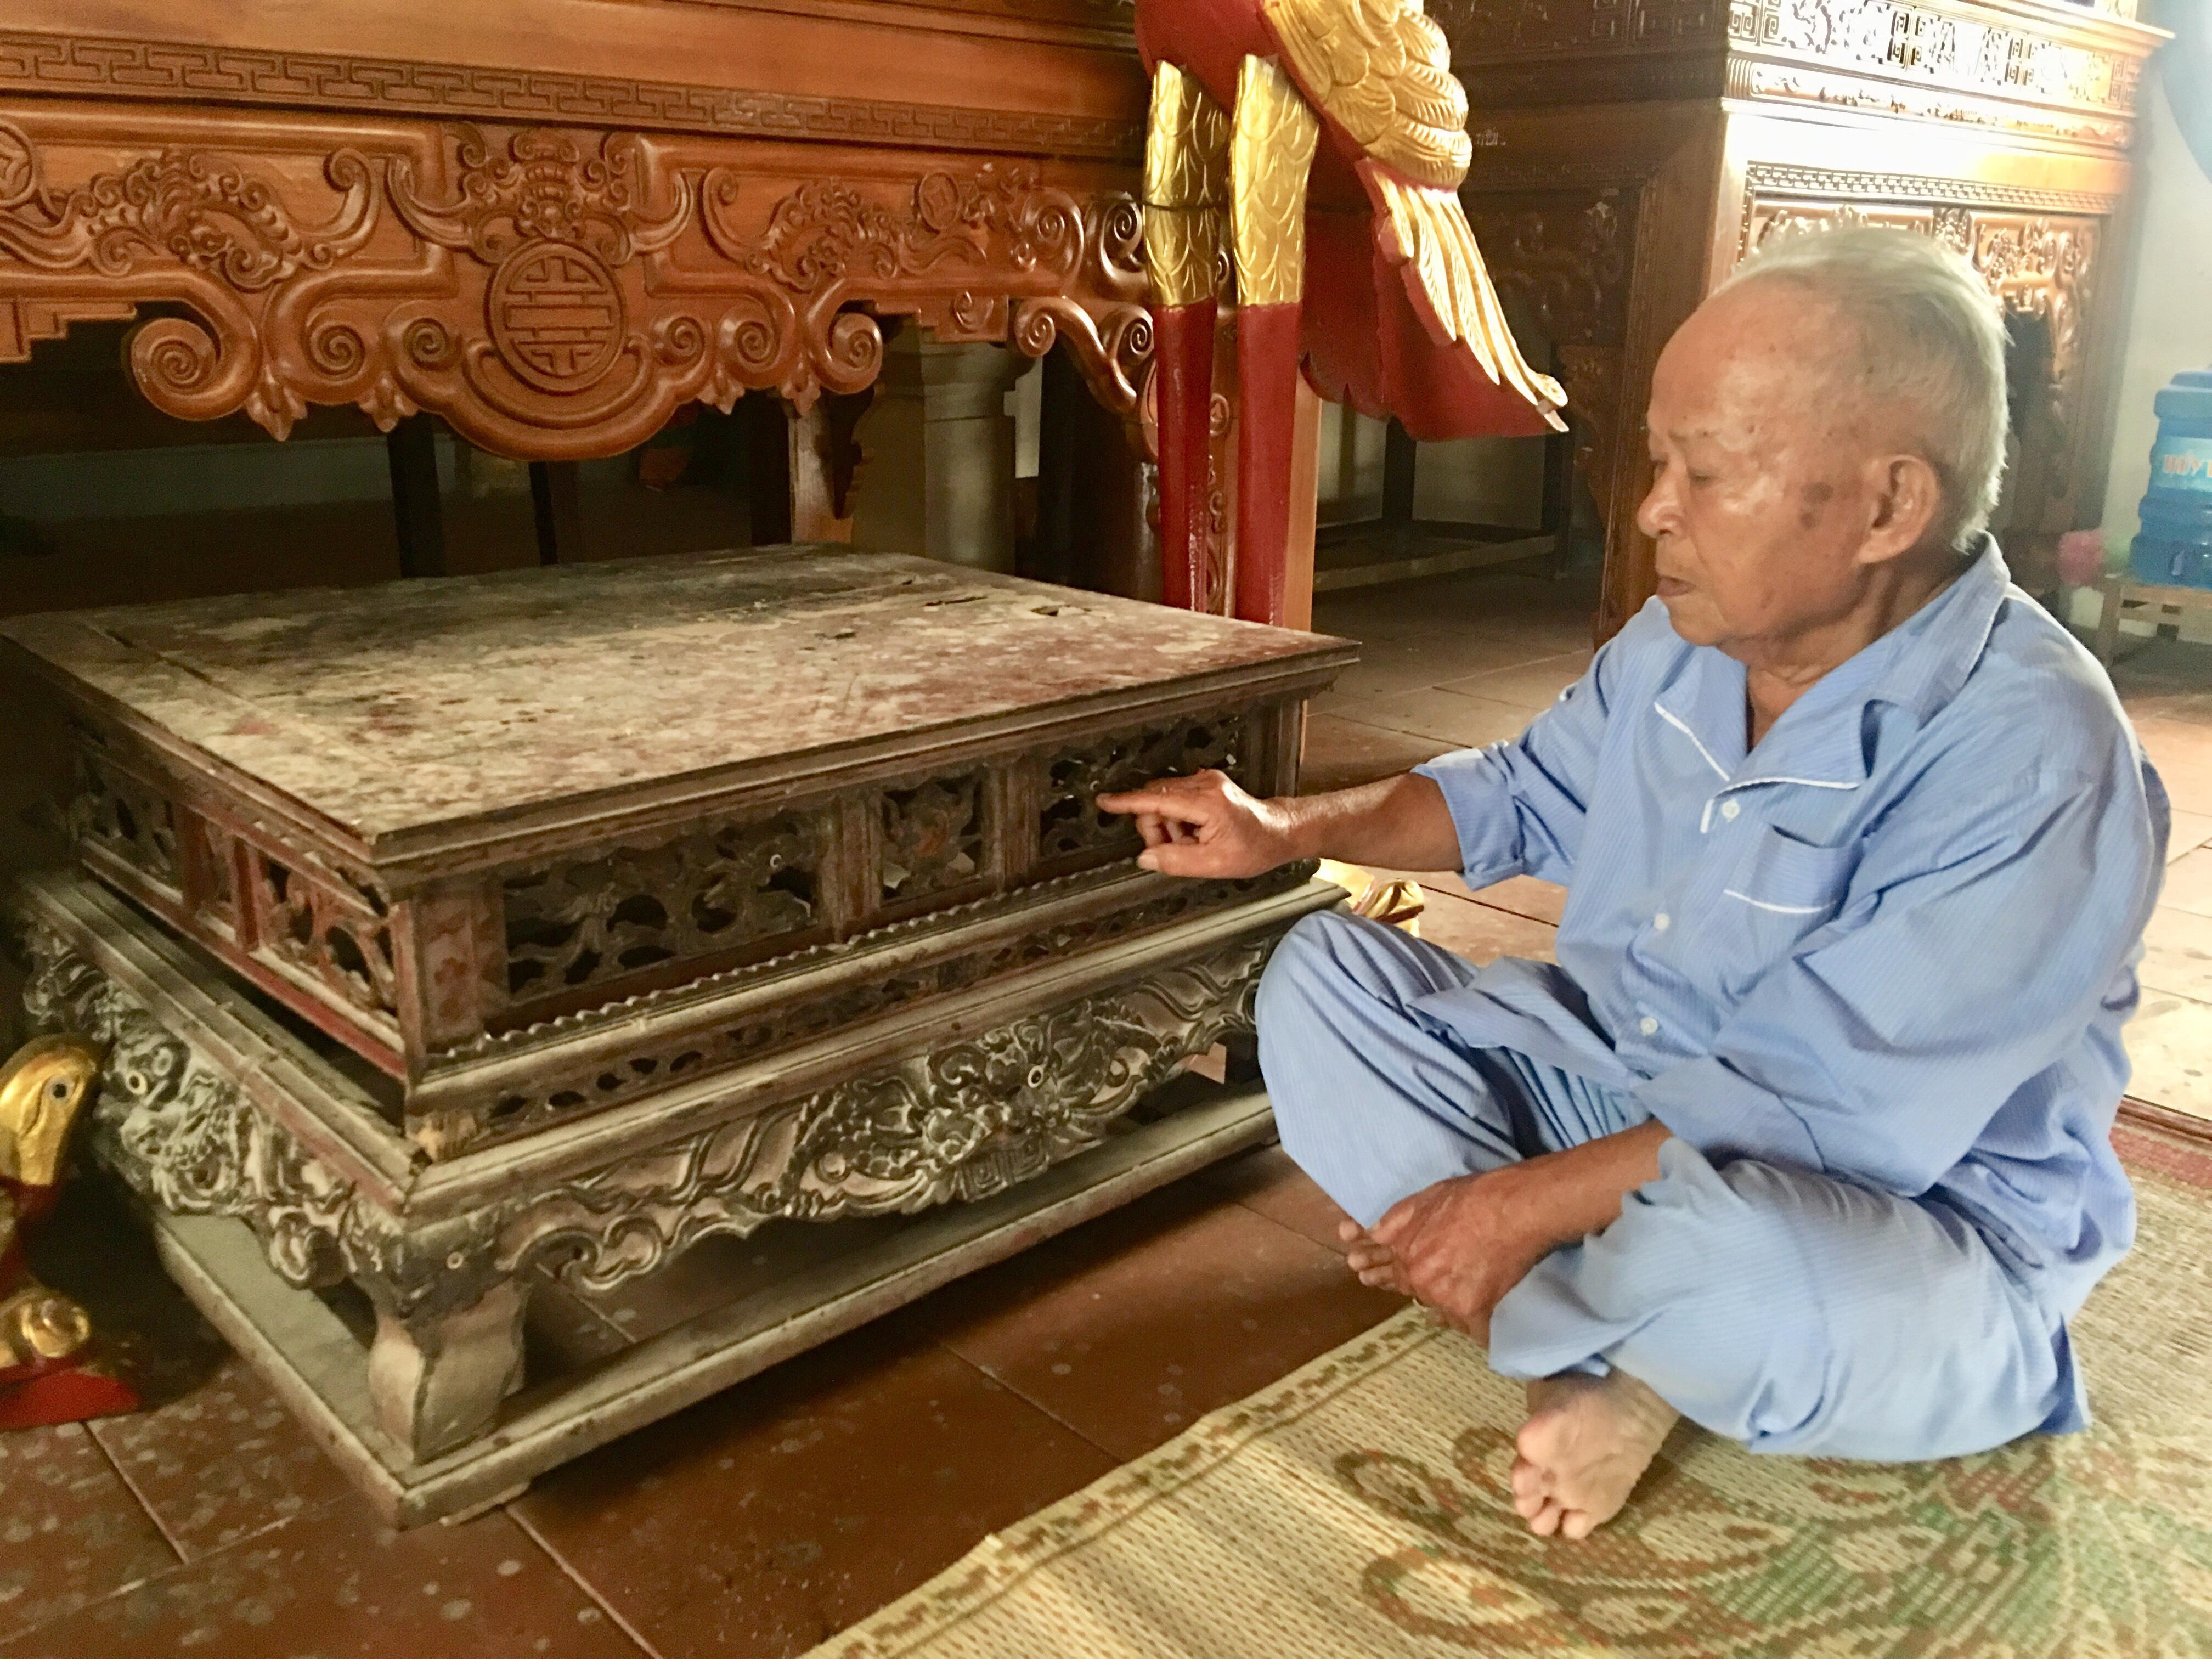 Ông Trần Văn Thanh, người trông coi đền bên chiếc bàn cổ dùng để đặt lễ tế